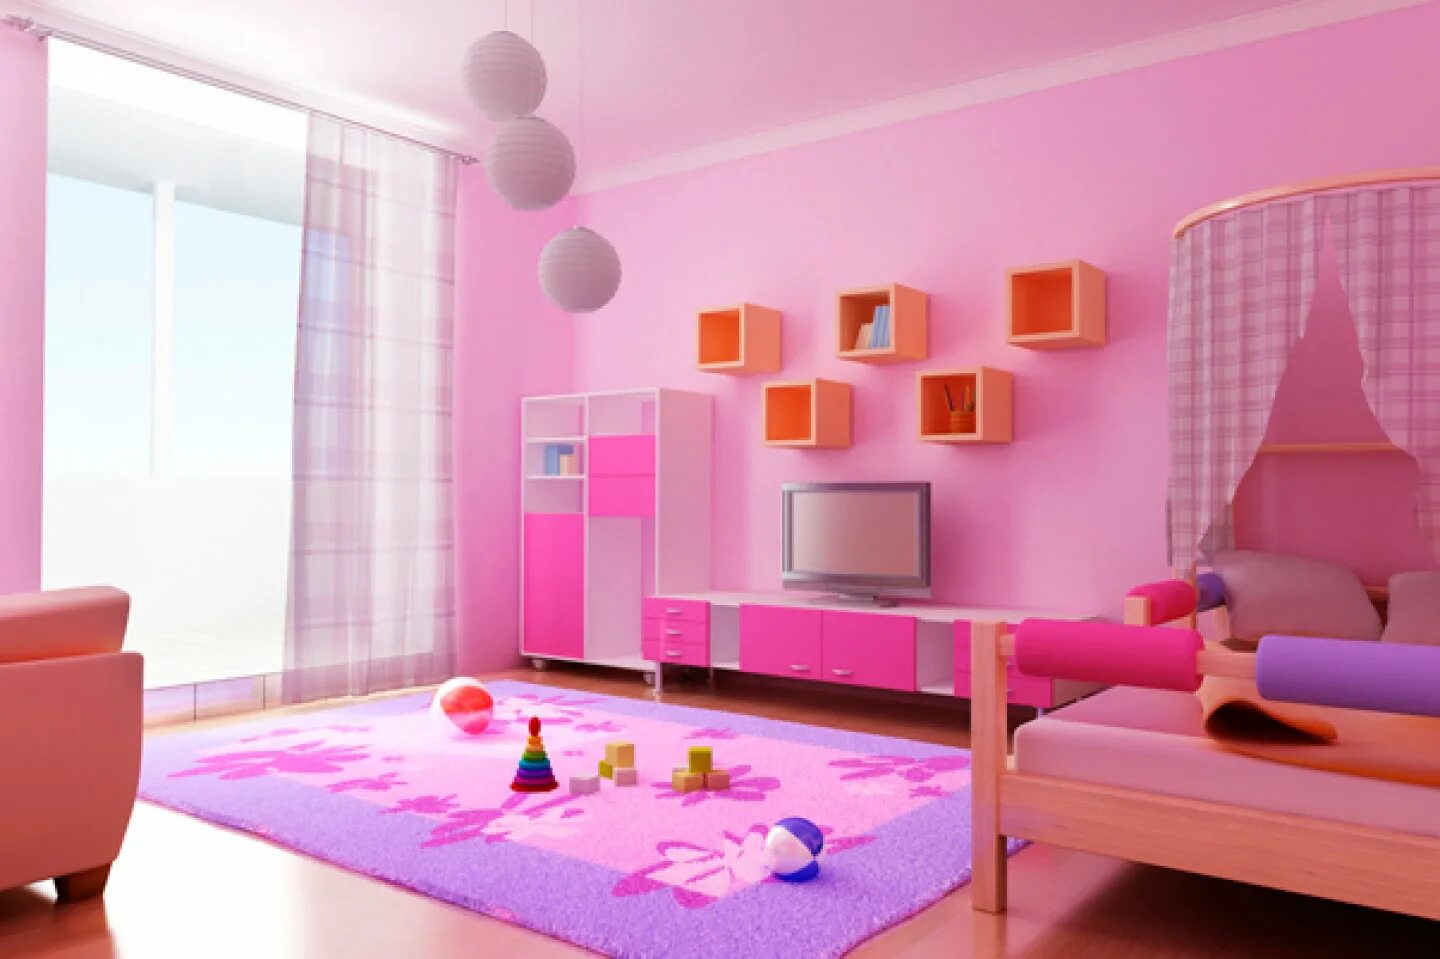 Oda alla. Интерьер комнаты. Интерьер детской комнаты. Розовый интерьер комнаты. Интерьер комнаты для девочки.